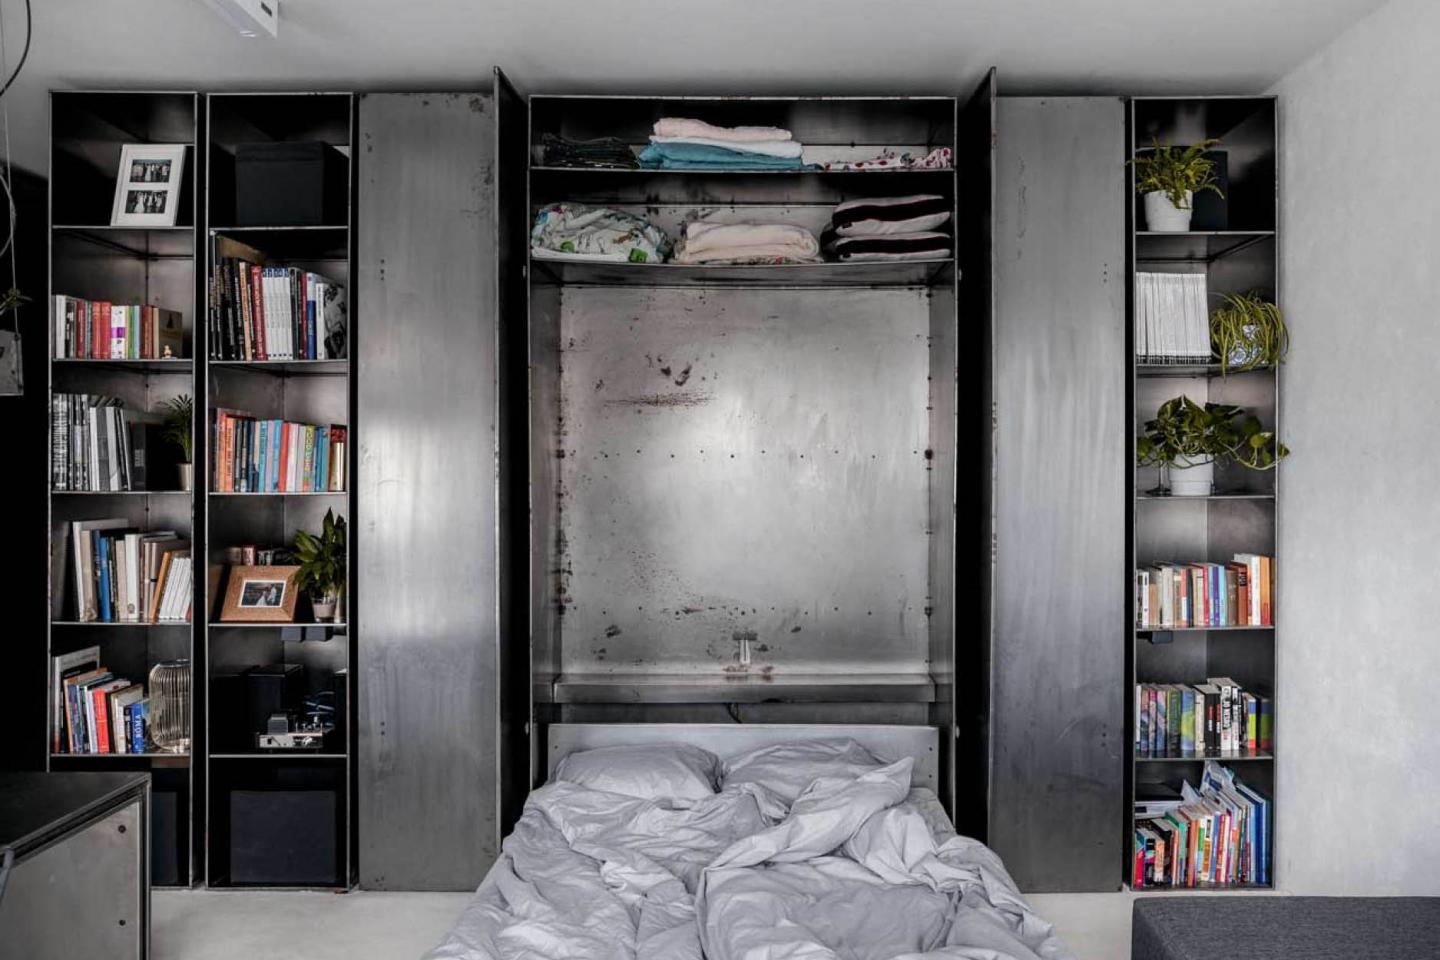 一如廚房的巧妙收納設計，把書架中間的牆板拉下即見睡床